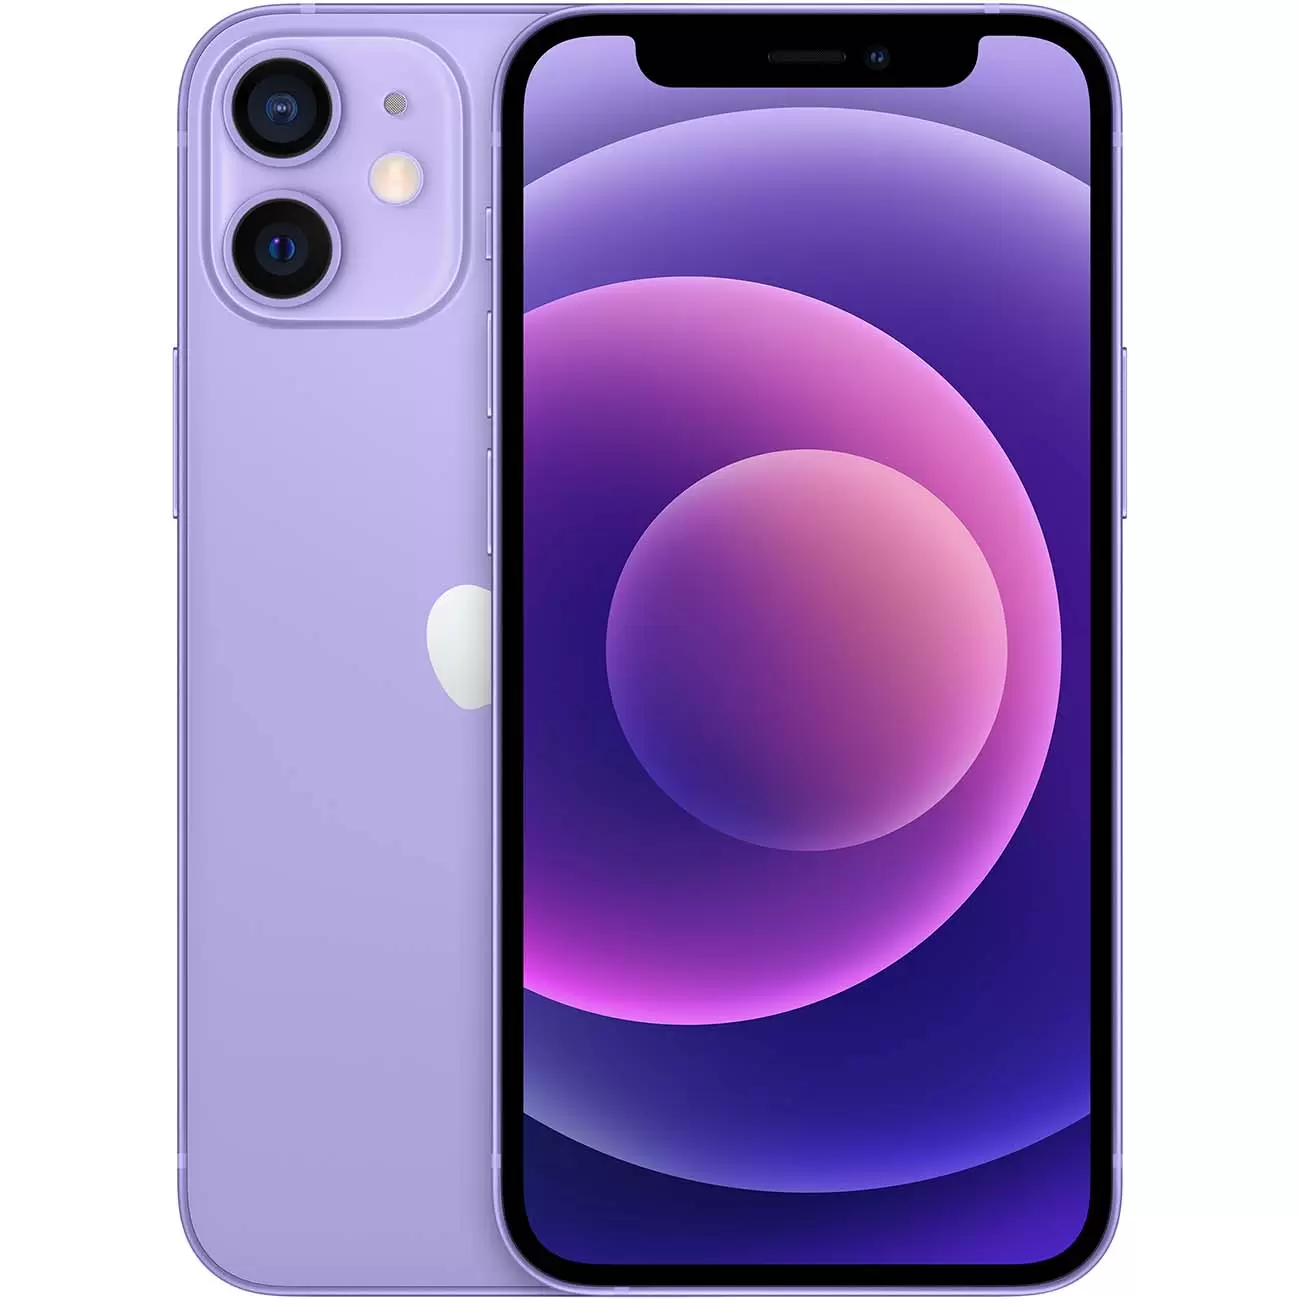 Купить смартфон apple iphone 12 128gb purple Apple iPhone 12 в официальном магазине Apple, Samsung, Xiaomi. iPixel.ru Купить, заказ, кредит, рассрочка, отзывы,  характеристики, цена,  фотографии, в подарок.